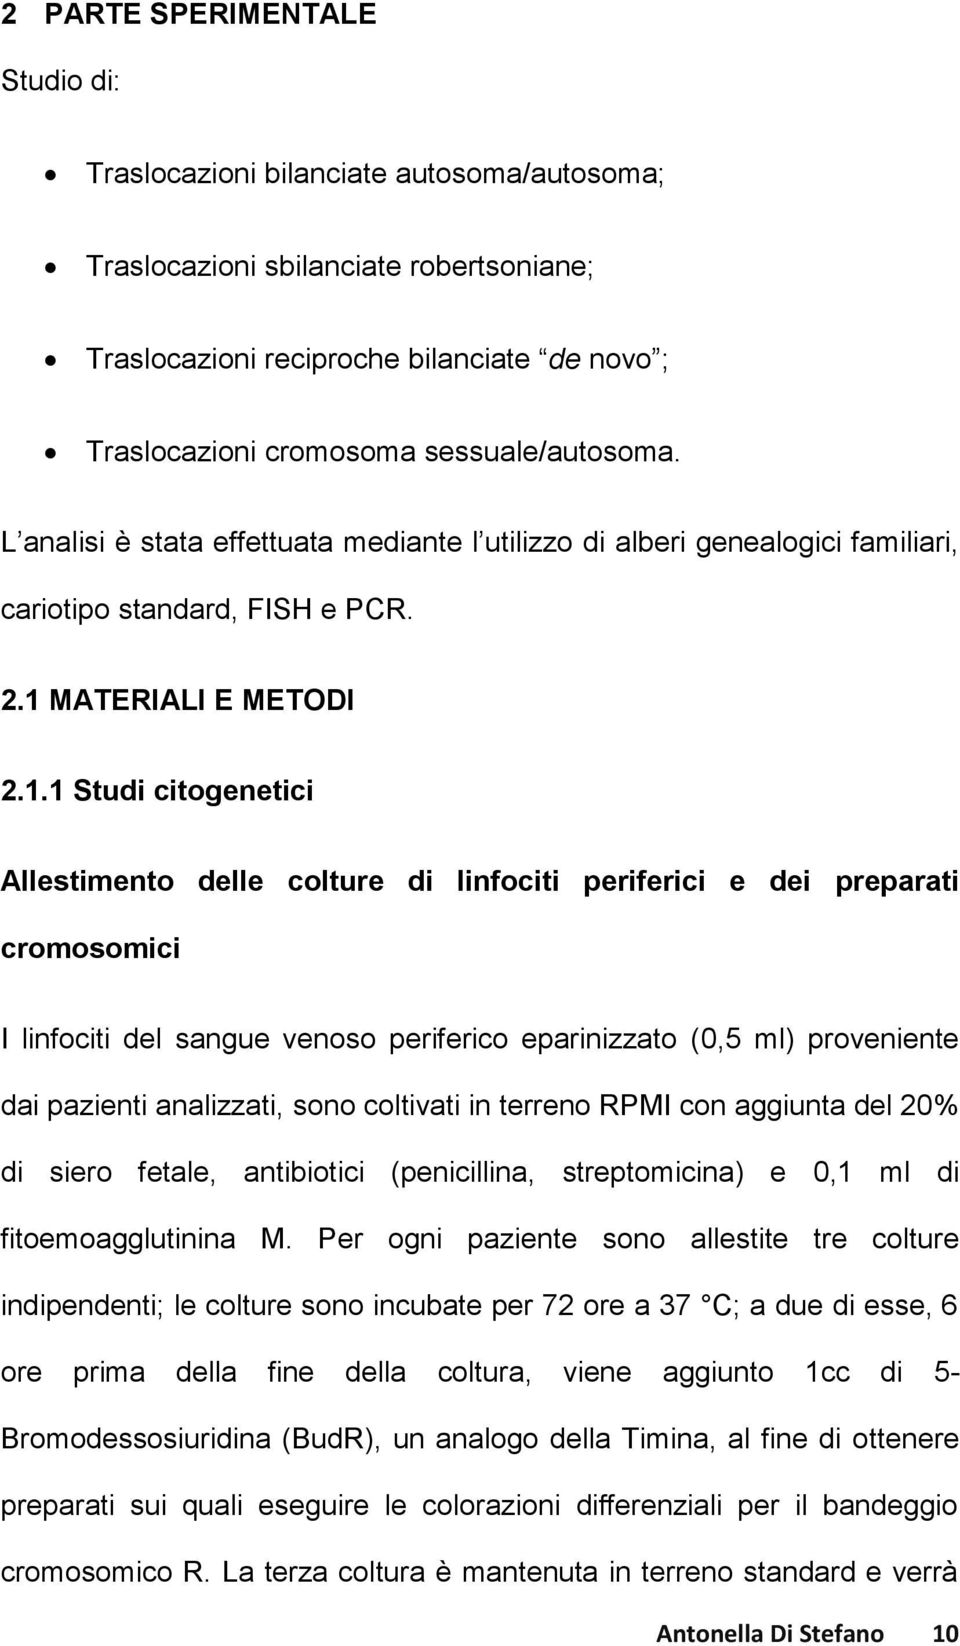 MATERIALI E METODI 2.1.